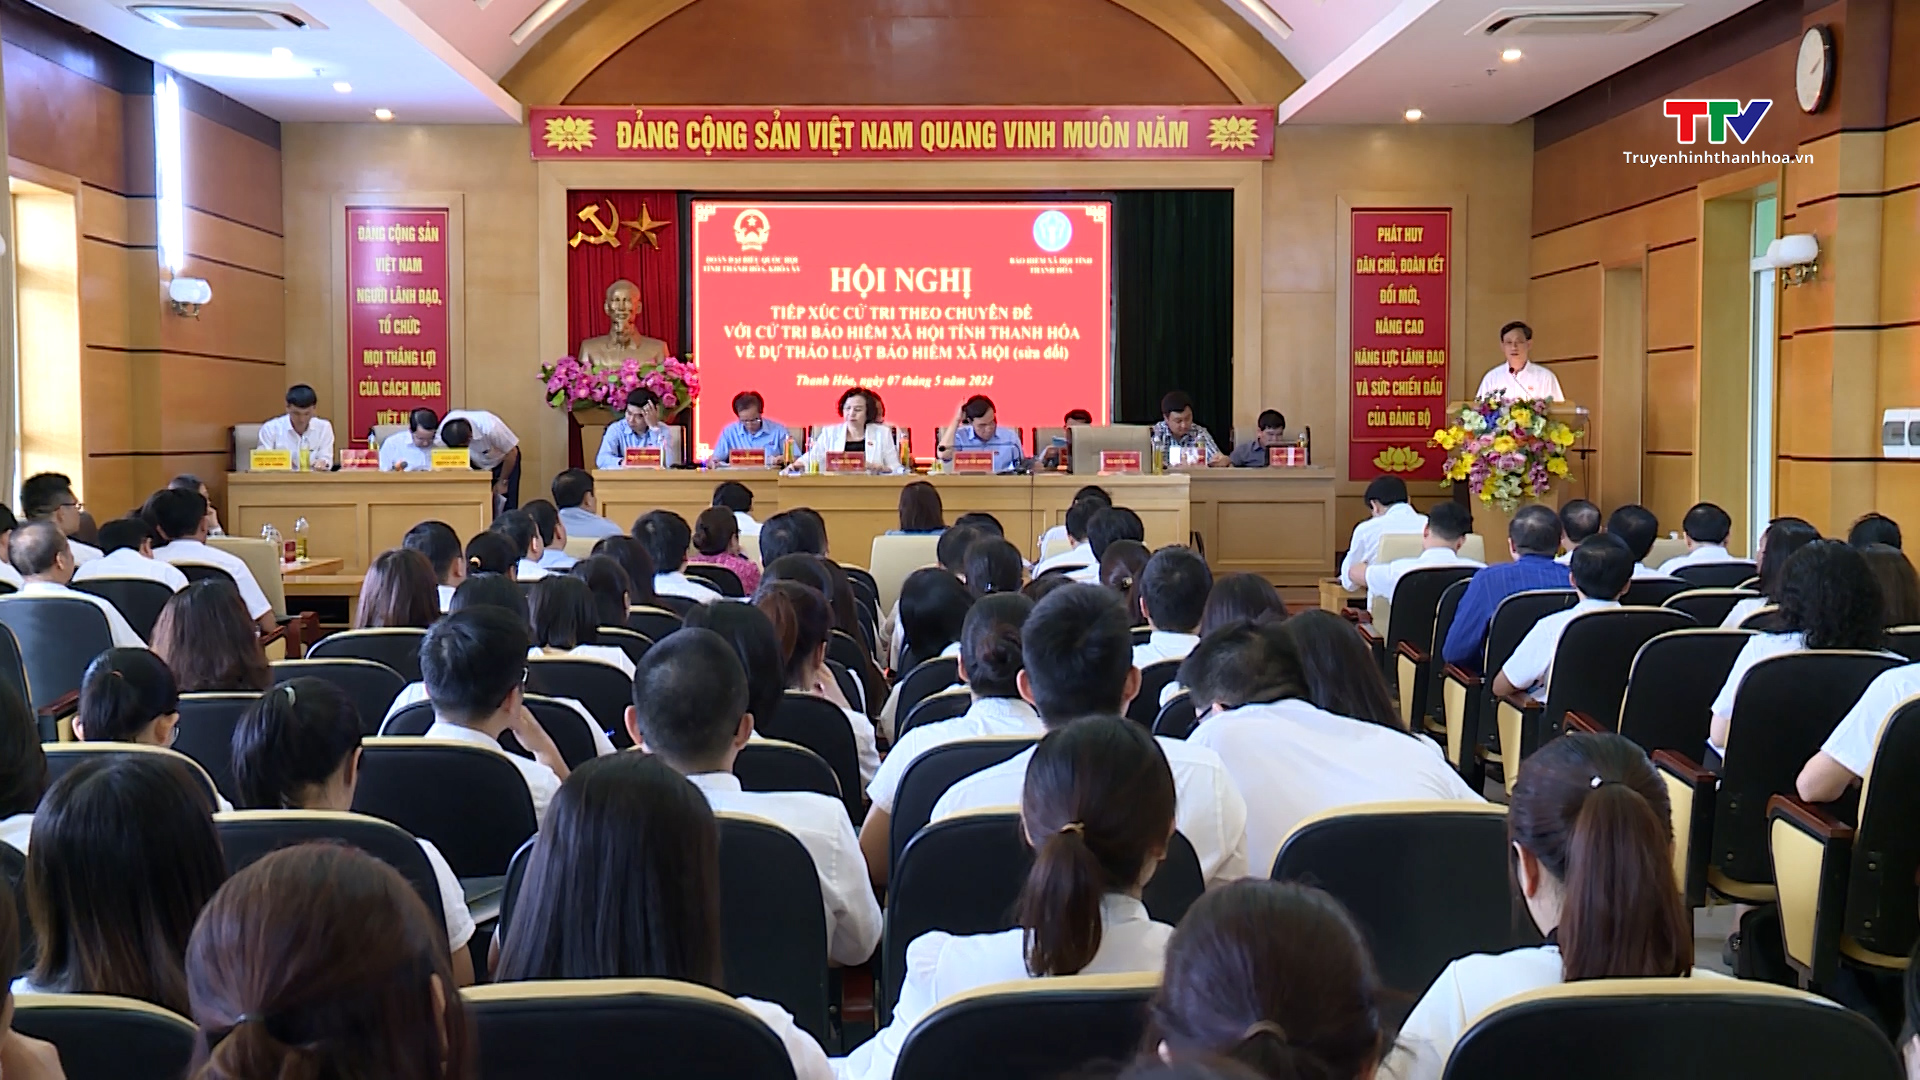 Đại biểu Quốc hội tỉnh Thanh Hoá tiếp xúc cử tri theo chuyên đề với cử tri bảo hiểm xã hội tỉnh Thanh Hoá- Ảnh 1.